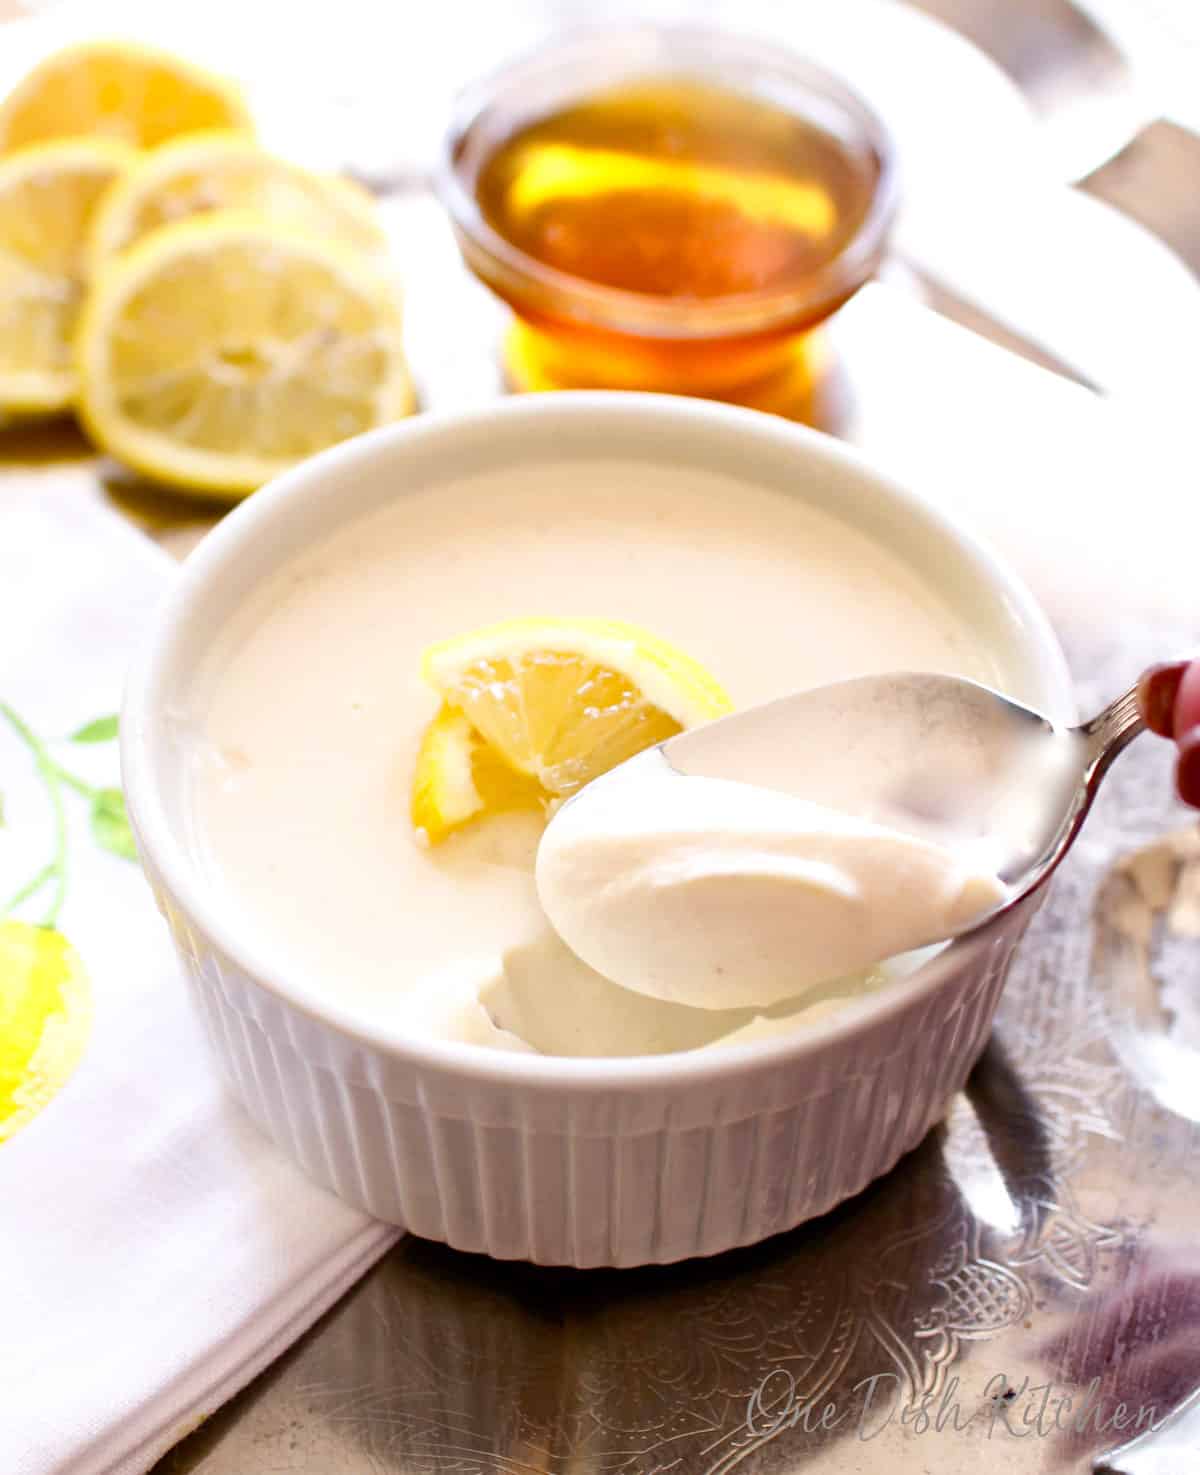 a lemon posset with a spoon on the side of the ramekin.